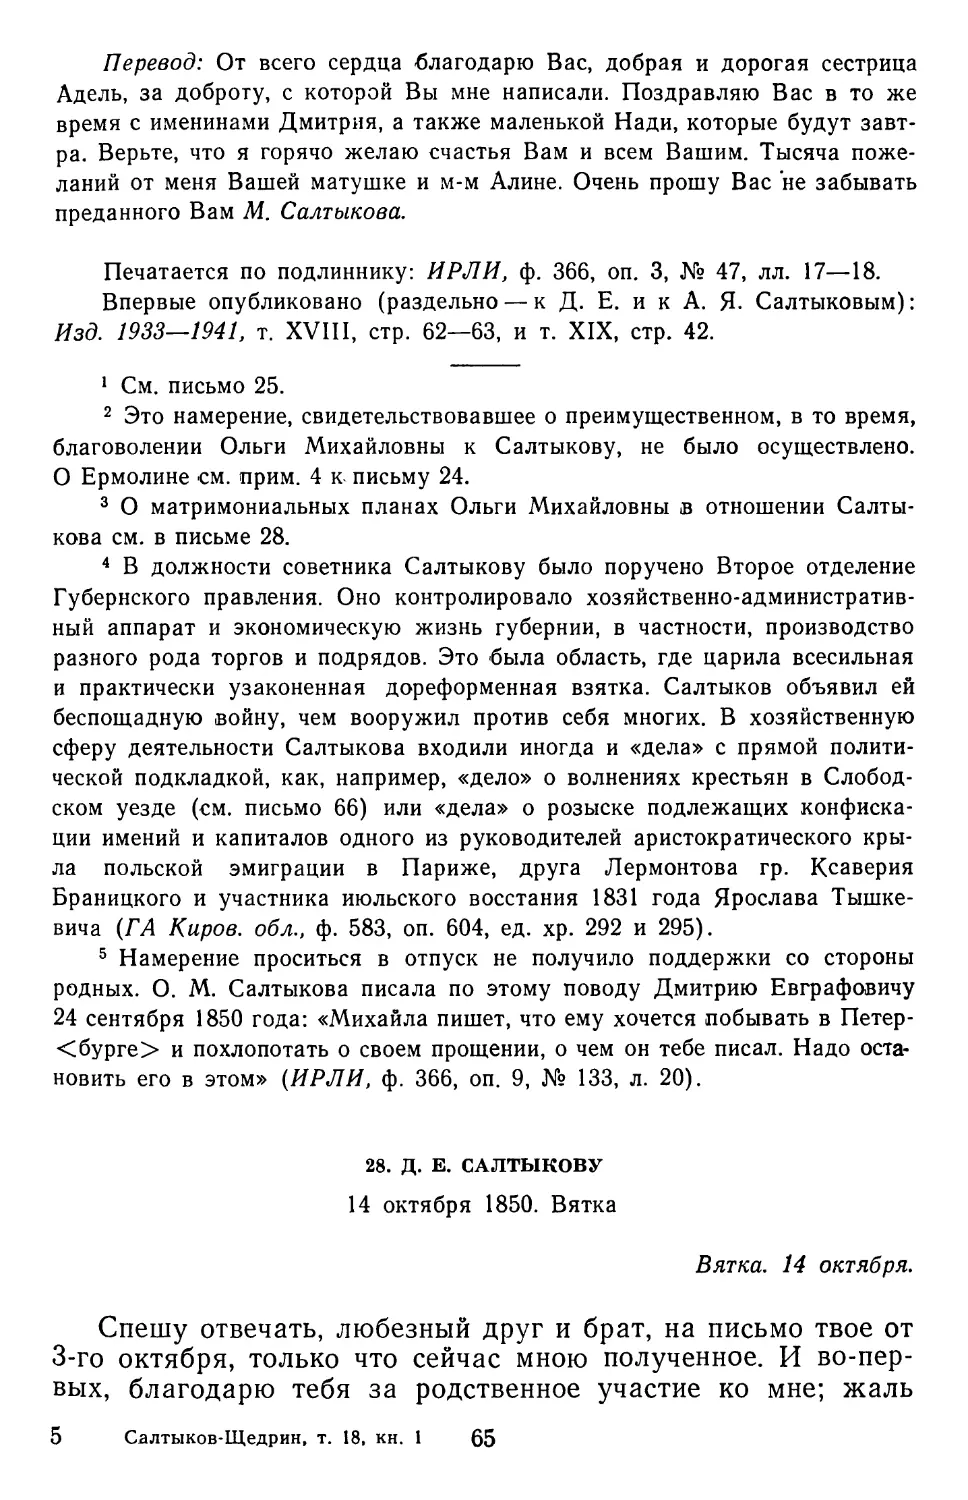 28.Д. Е. Салтыкову. 14 октября 1850. Вятка